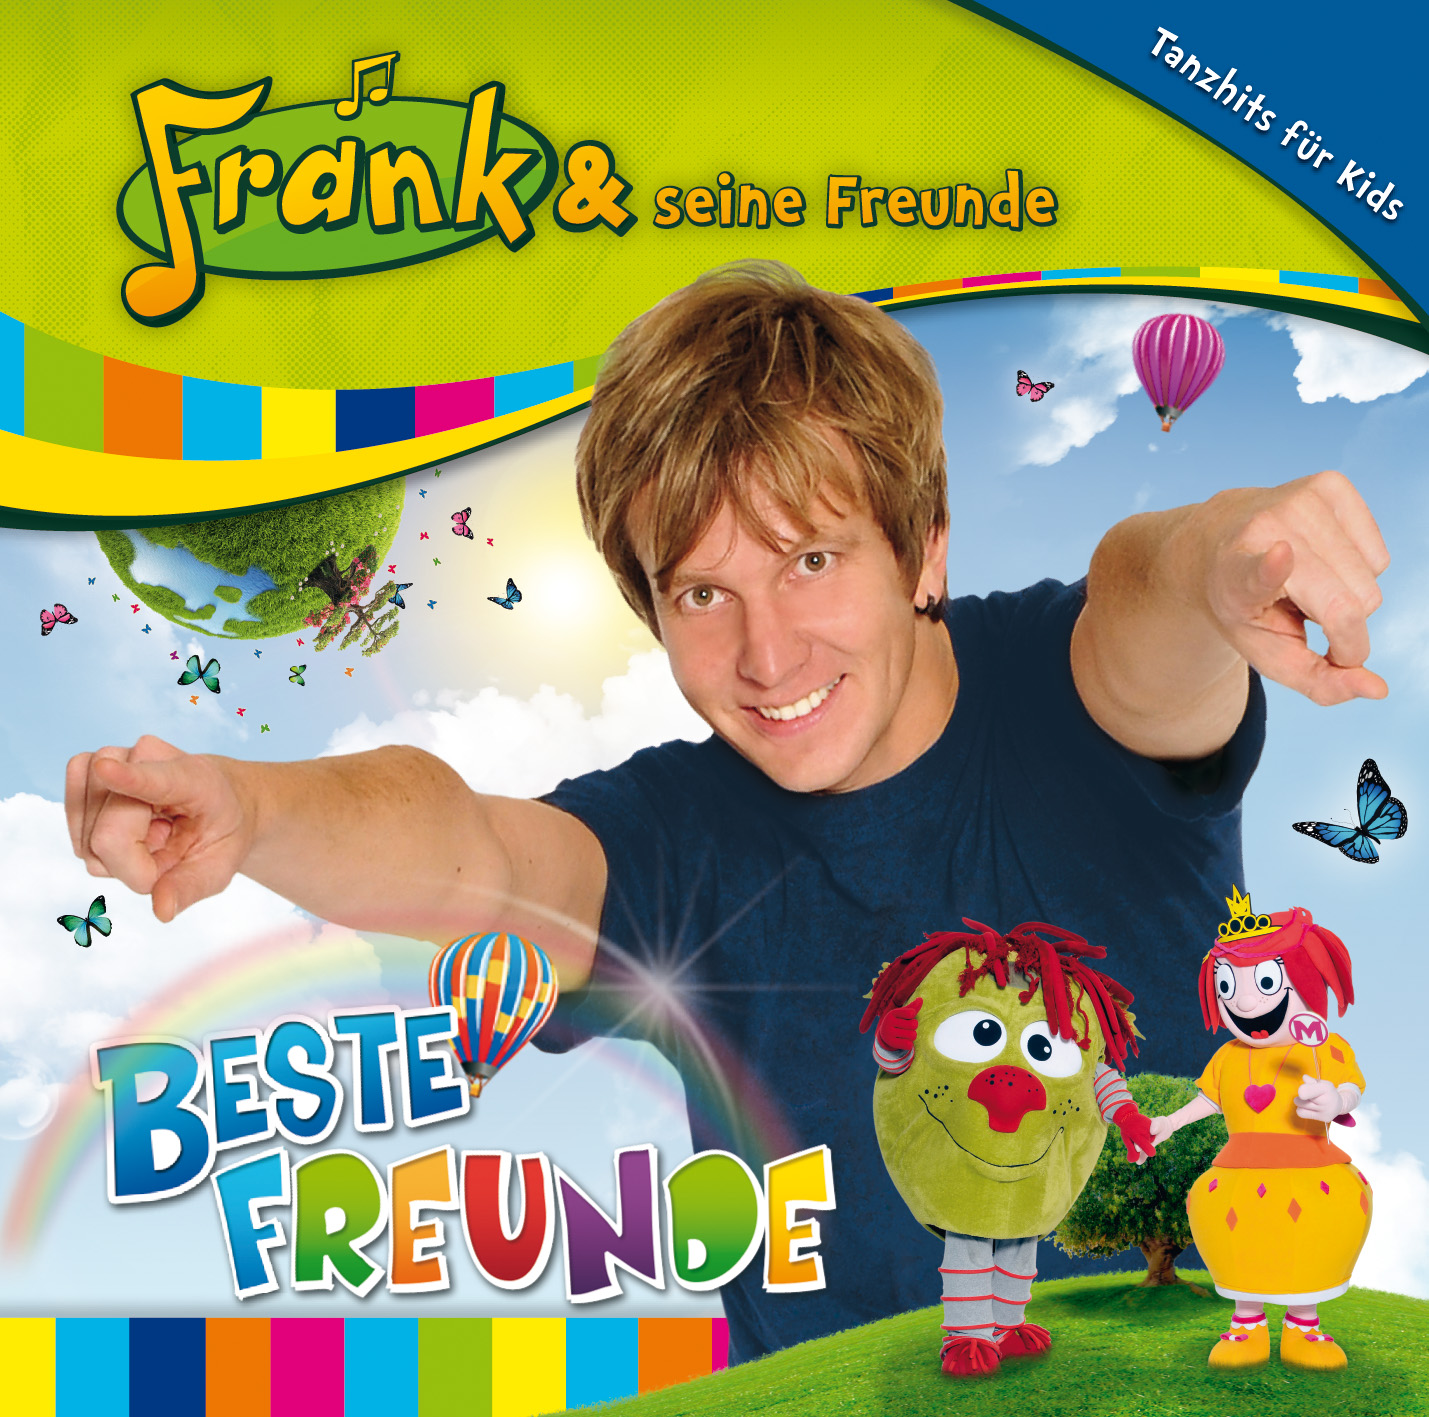 Frank & seine Freunde  - Beste Freunde